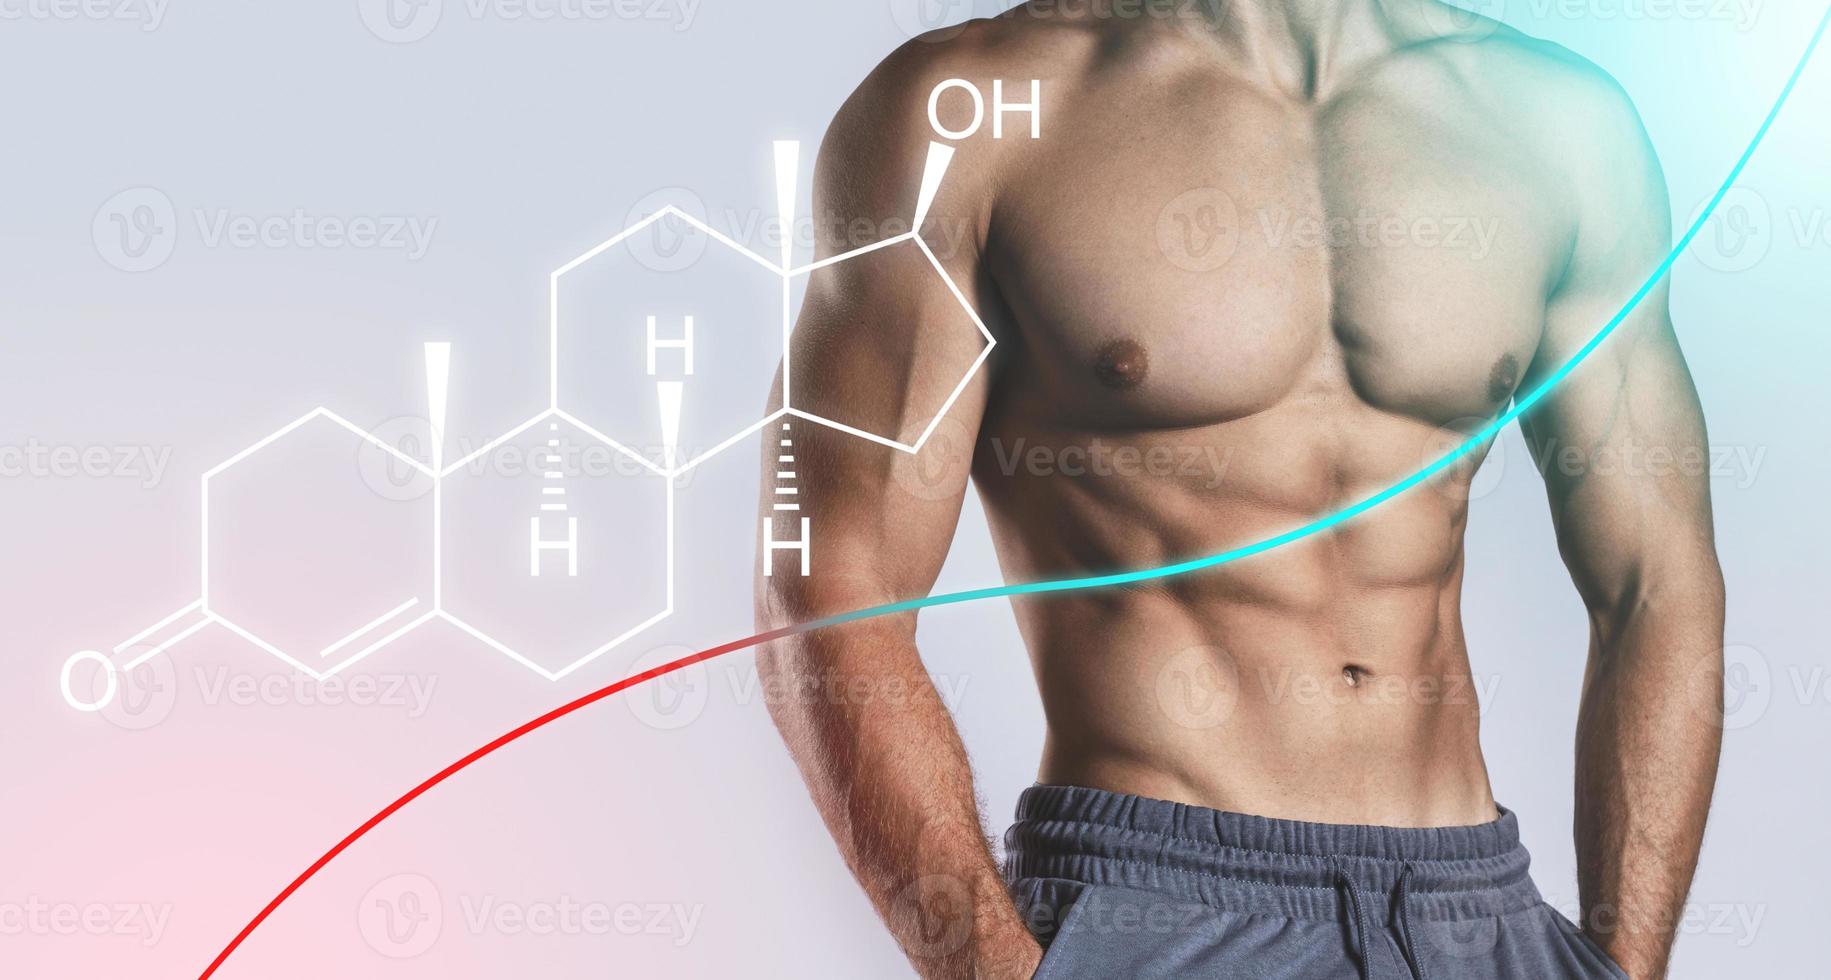 torse masculin musclé et formule de testostérone. concept de méthodes d'augmentation hormonale. photo